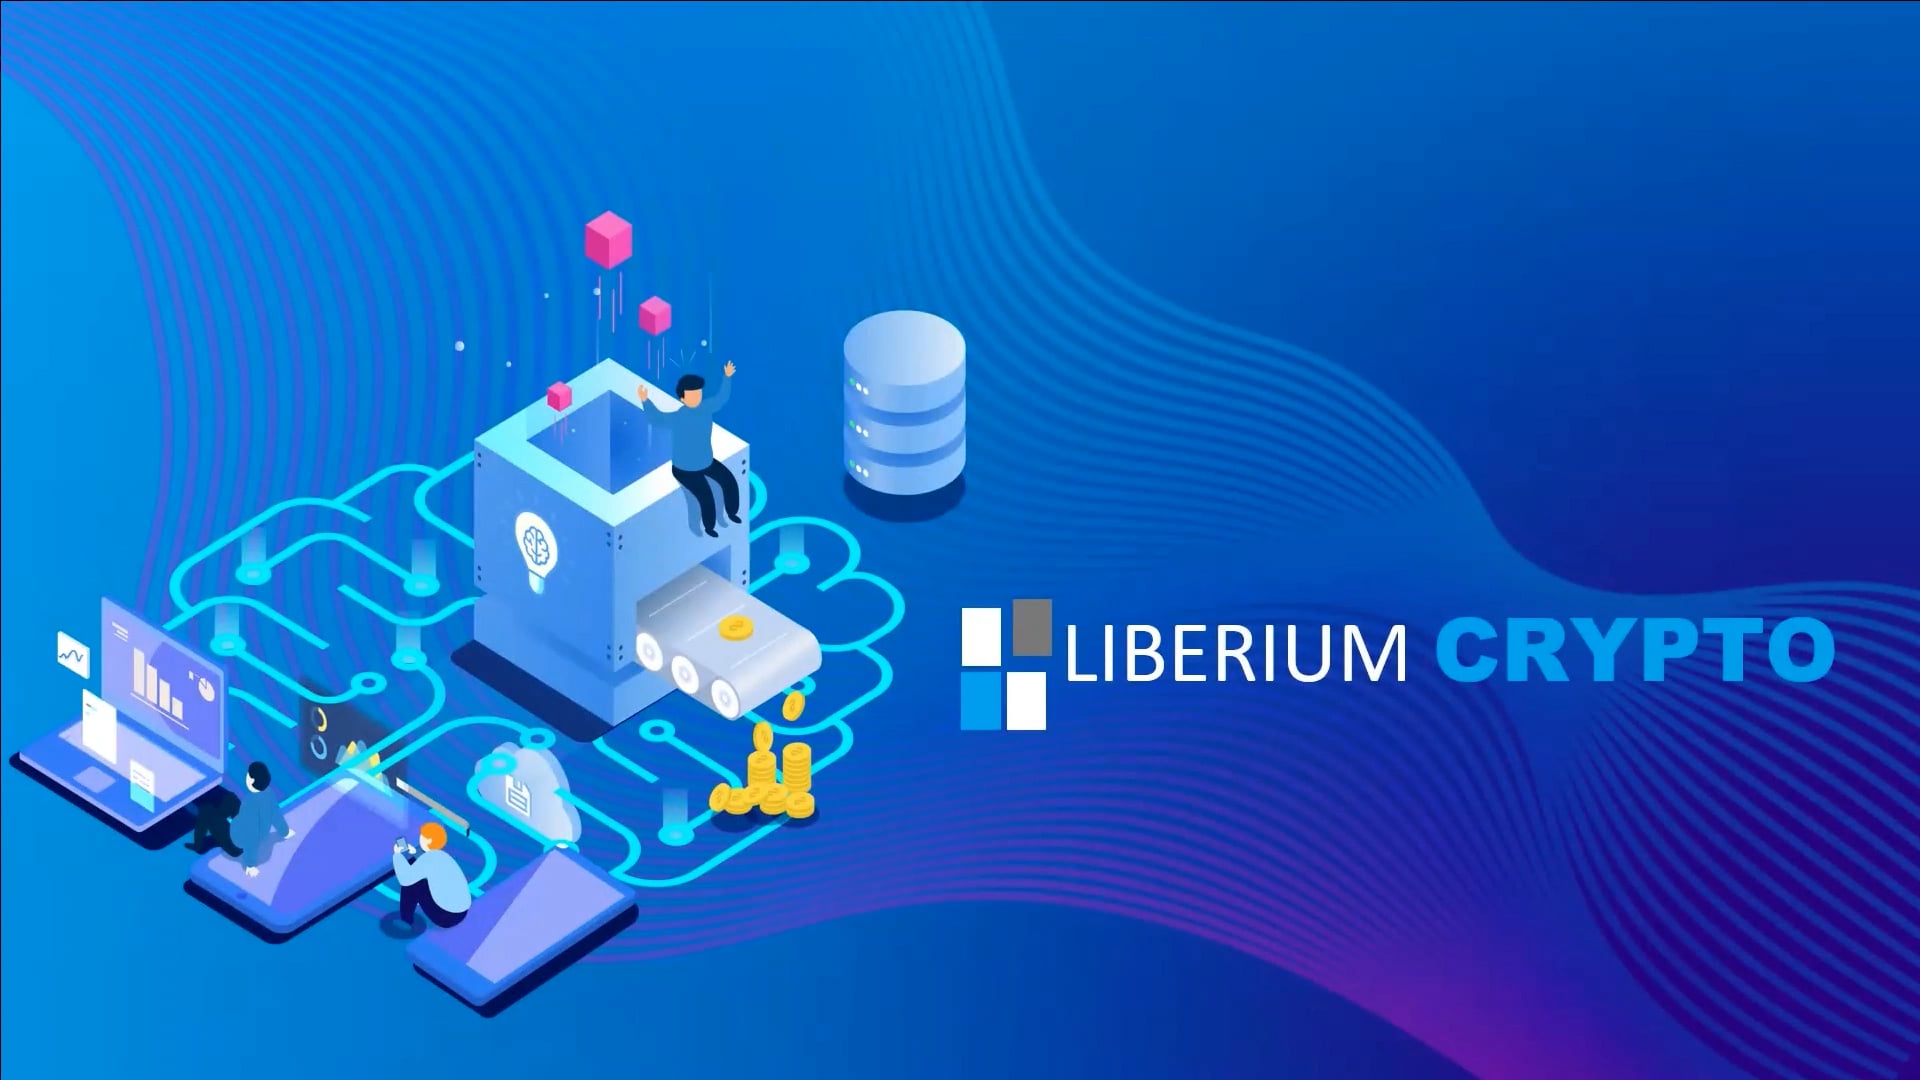 Liberium Crypto Overview